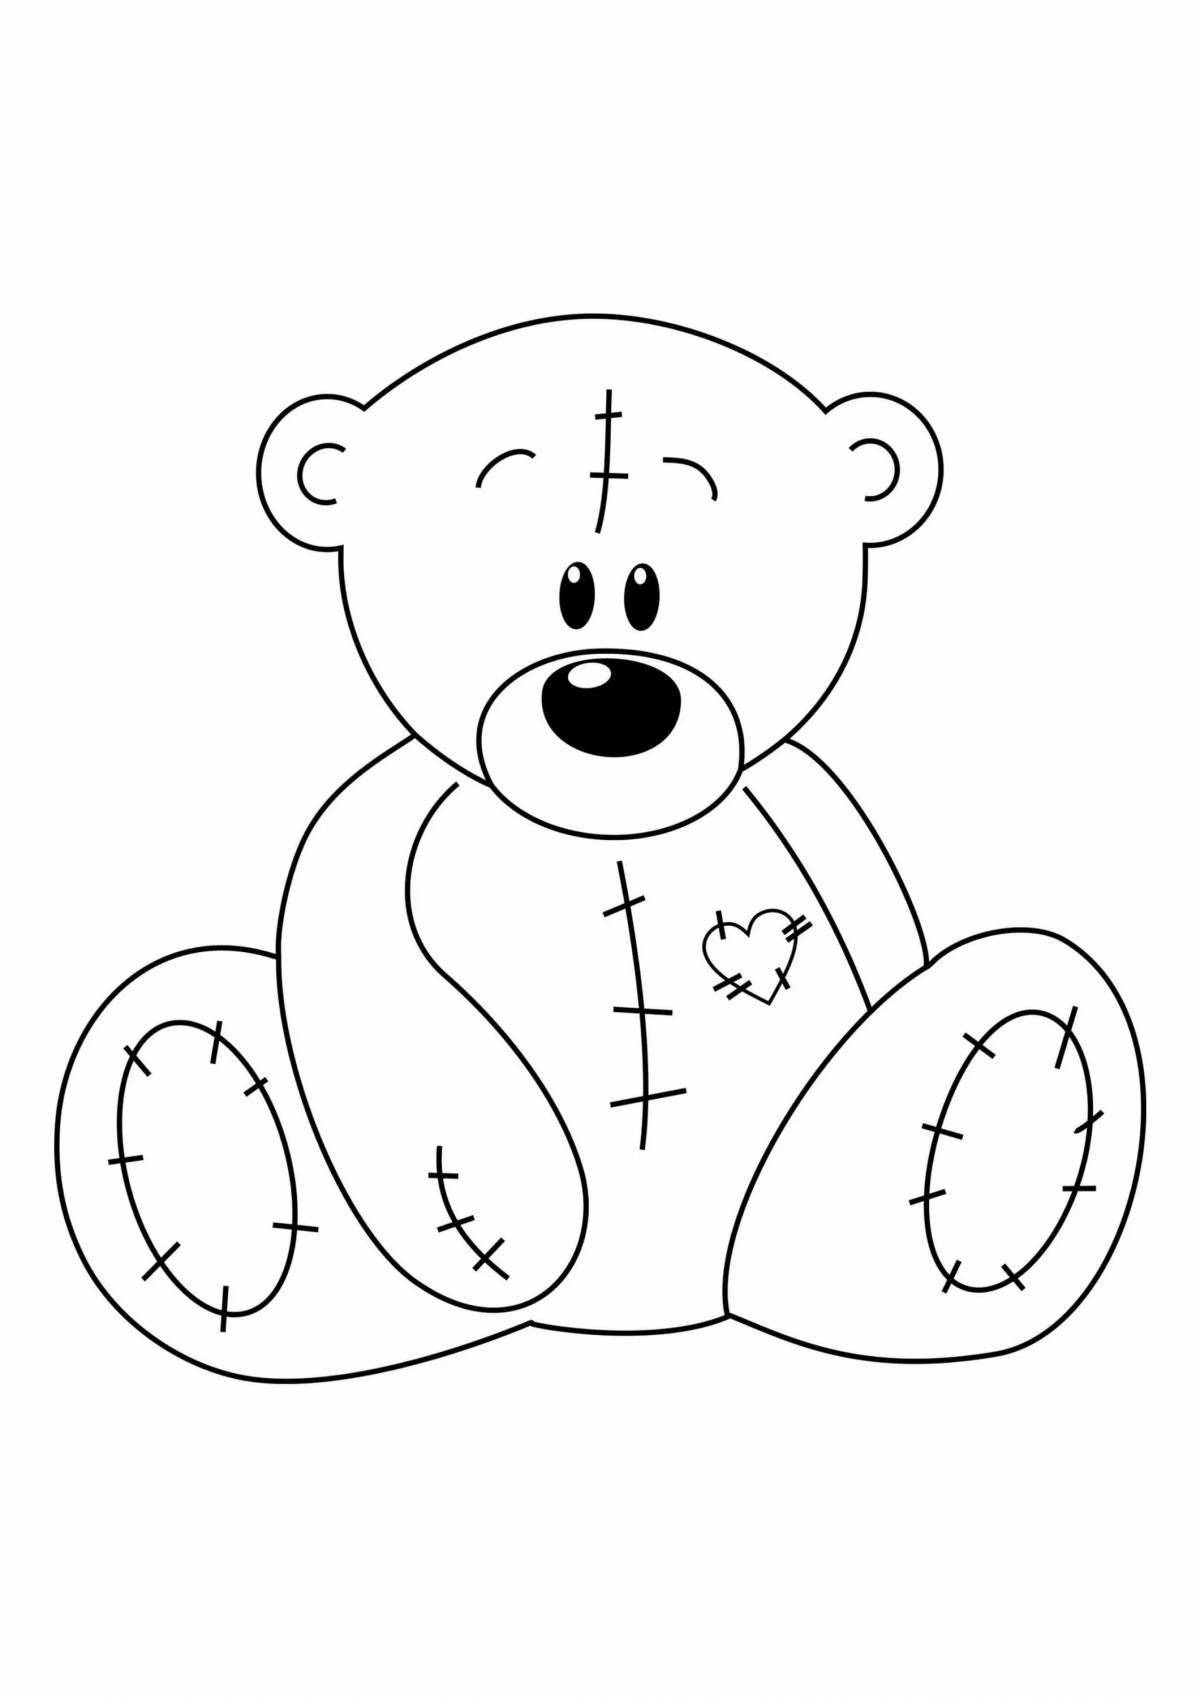 Fun teddy bear pattern for kids